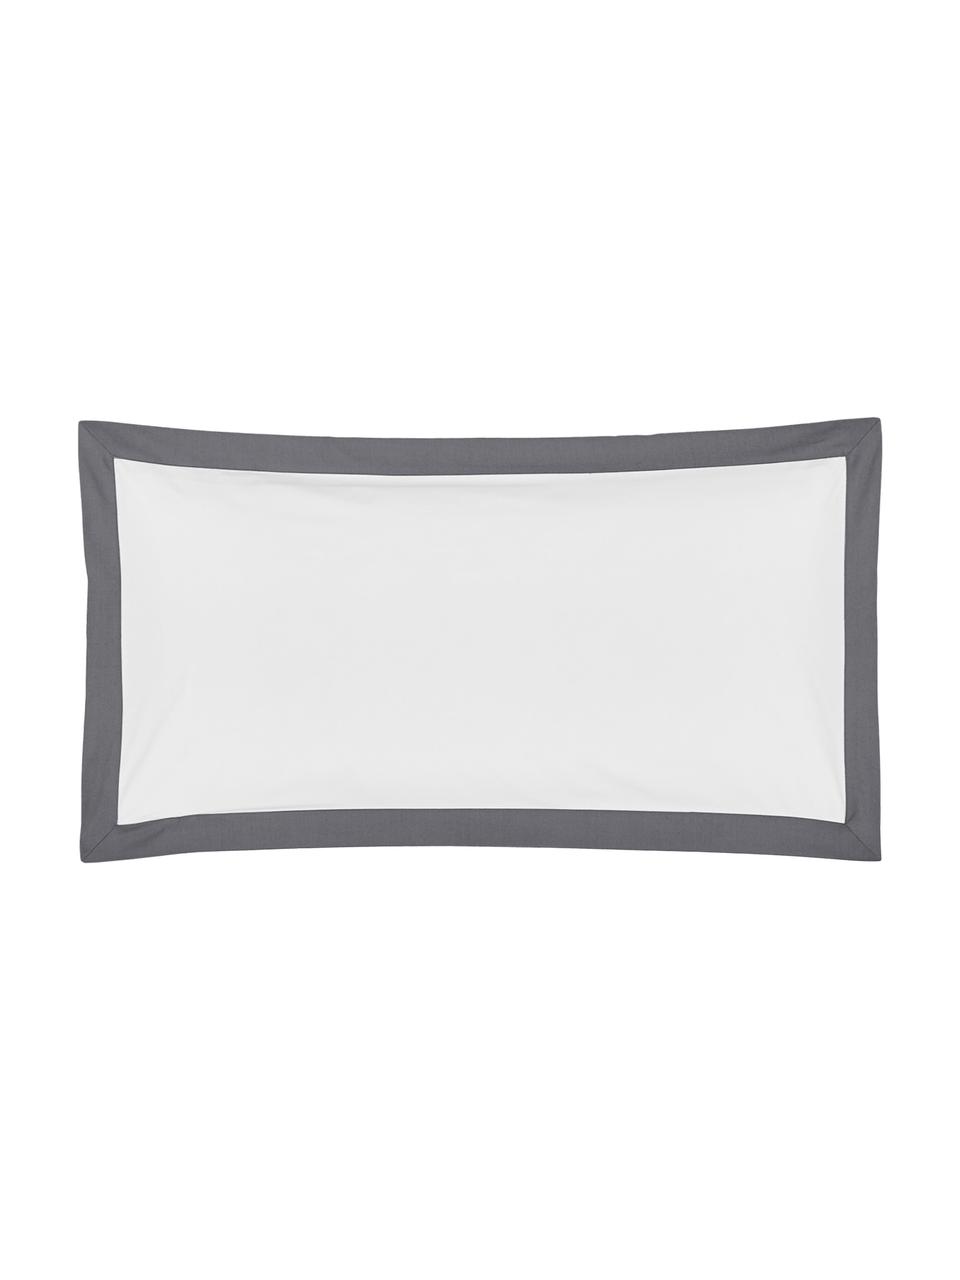 Baumwollperkal-Kopfkissenbezüge Joanna in Weiß mit grauem Stehsaum, 2 Stück, Webart: Perkal Fadendichte 200 TC, Weiß, Grau, B 40 x L 80 cm